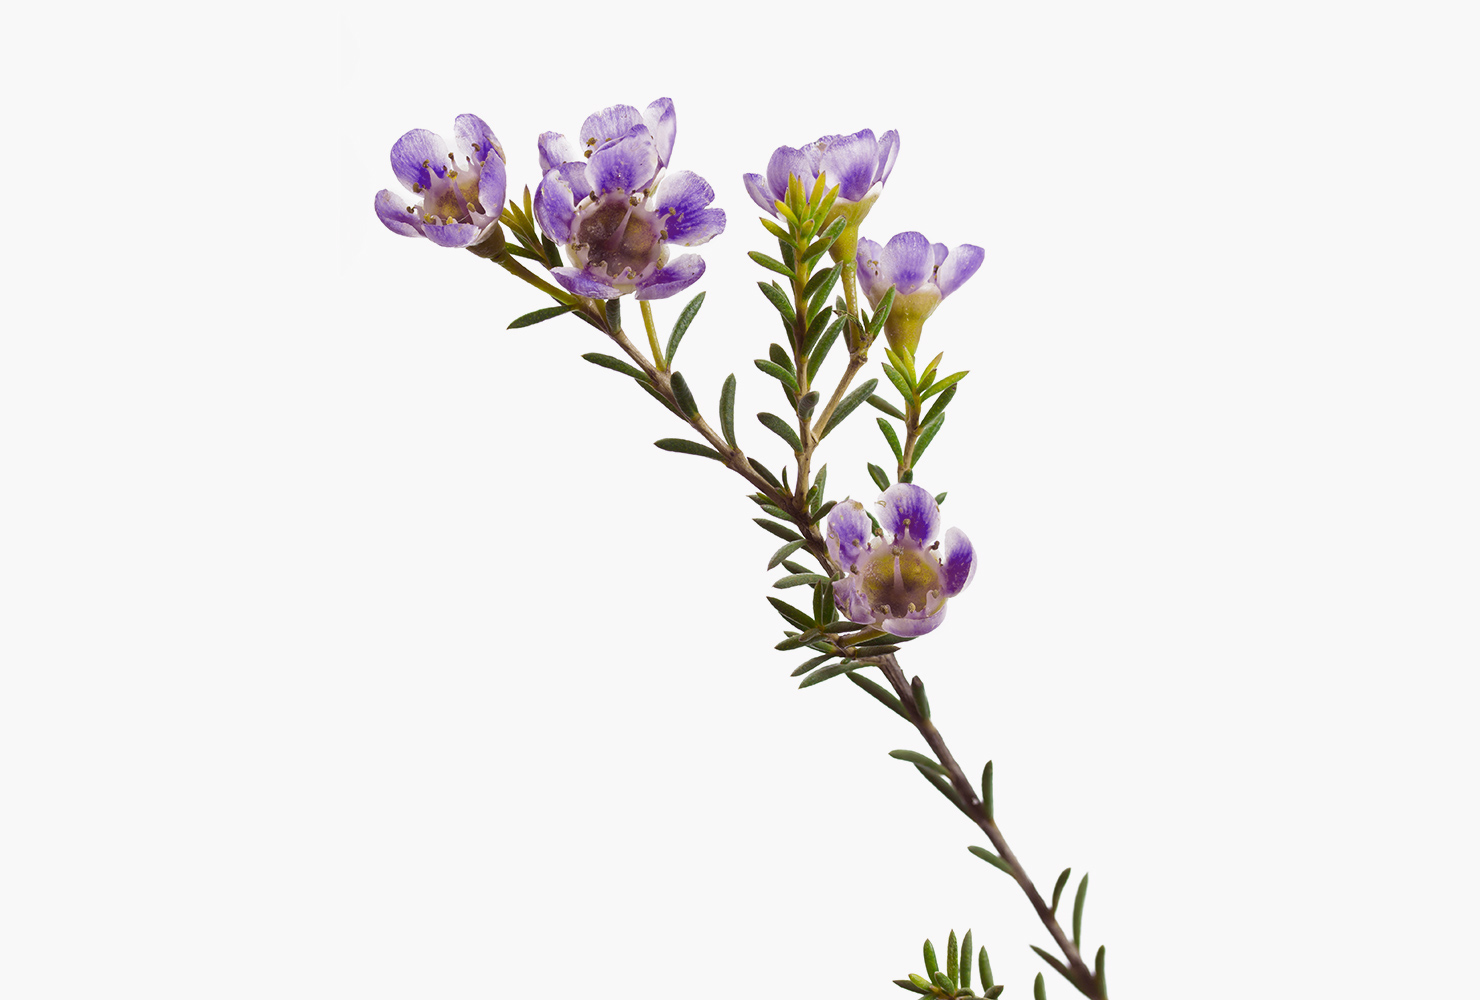 A purple waxflower.